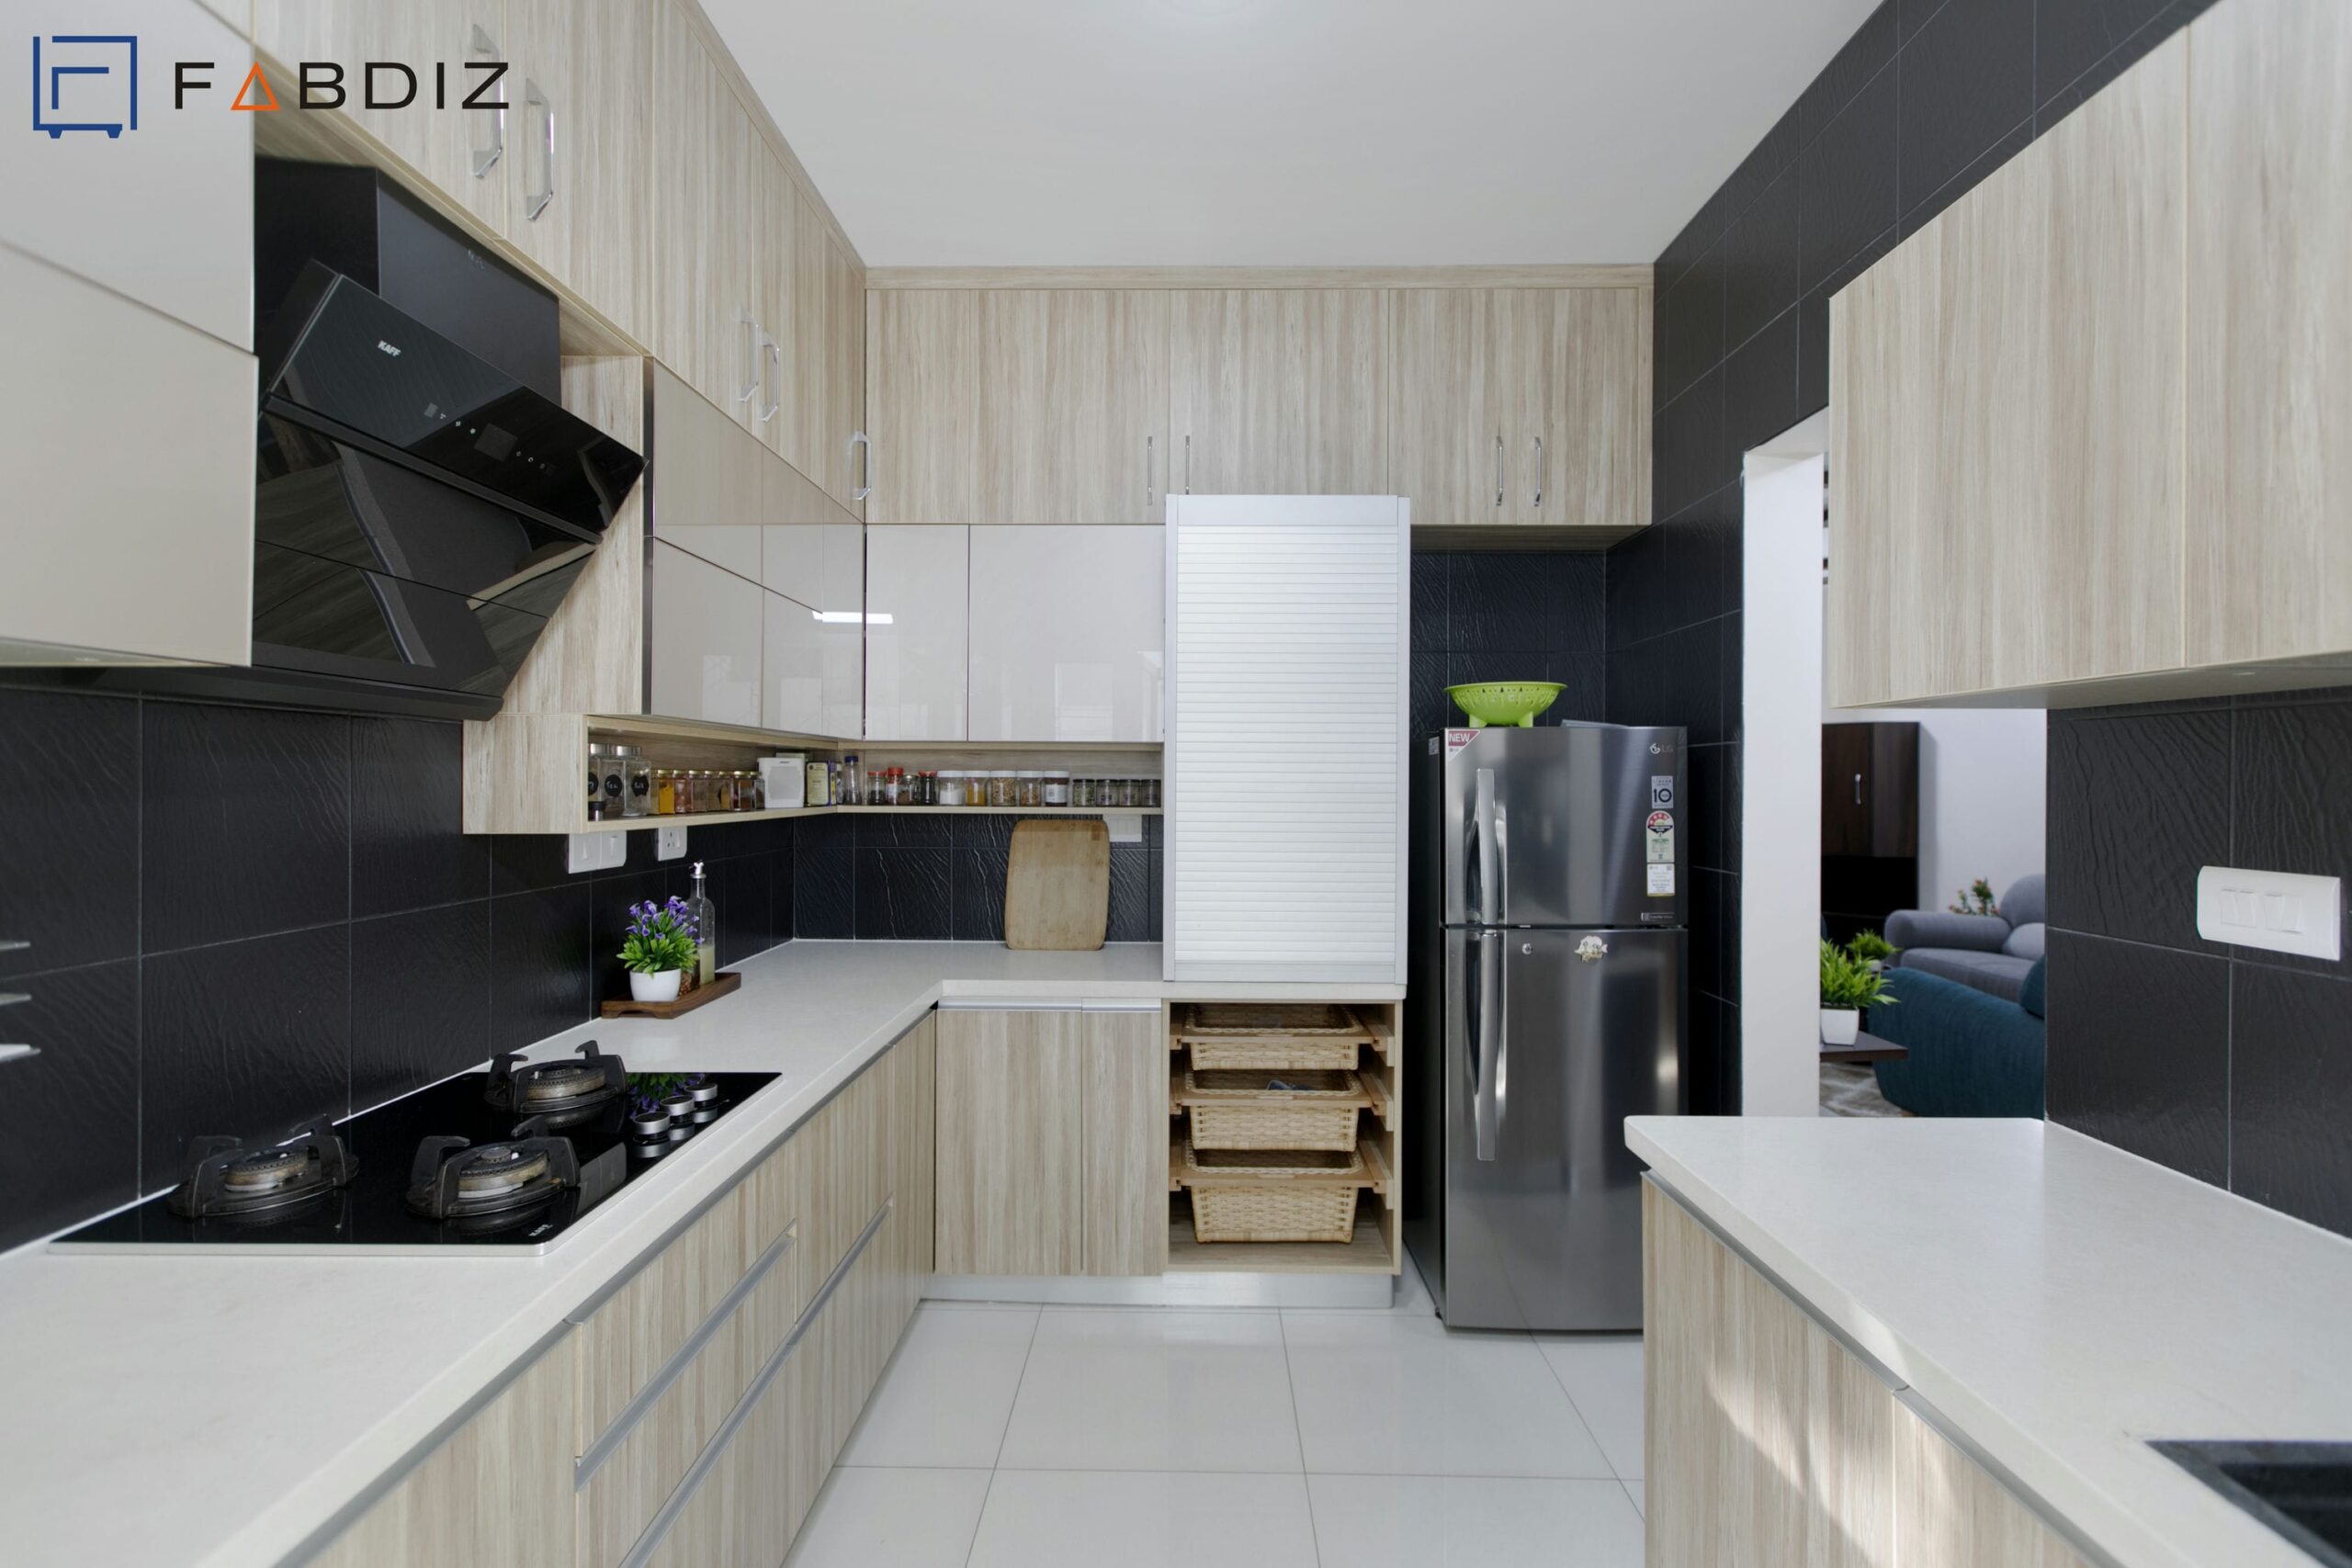 View of Kitchen Interior Design